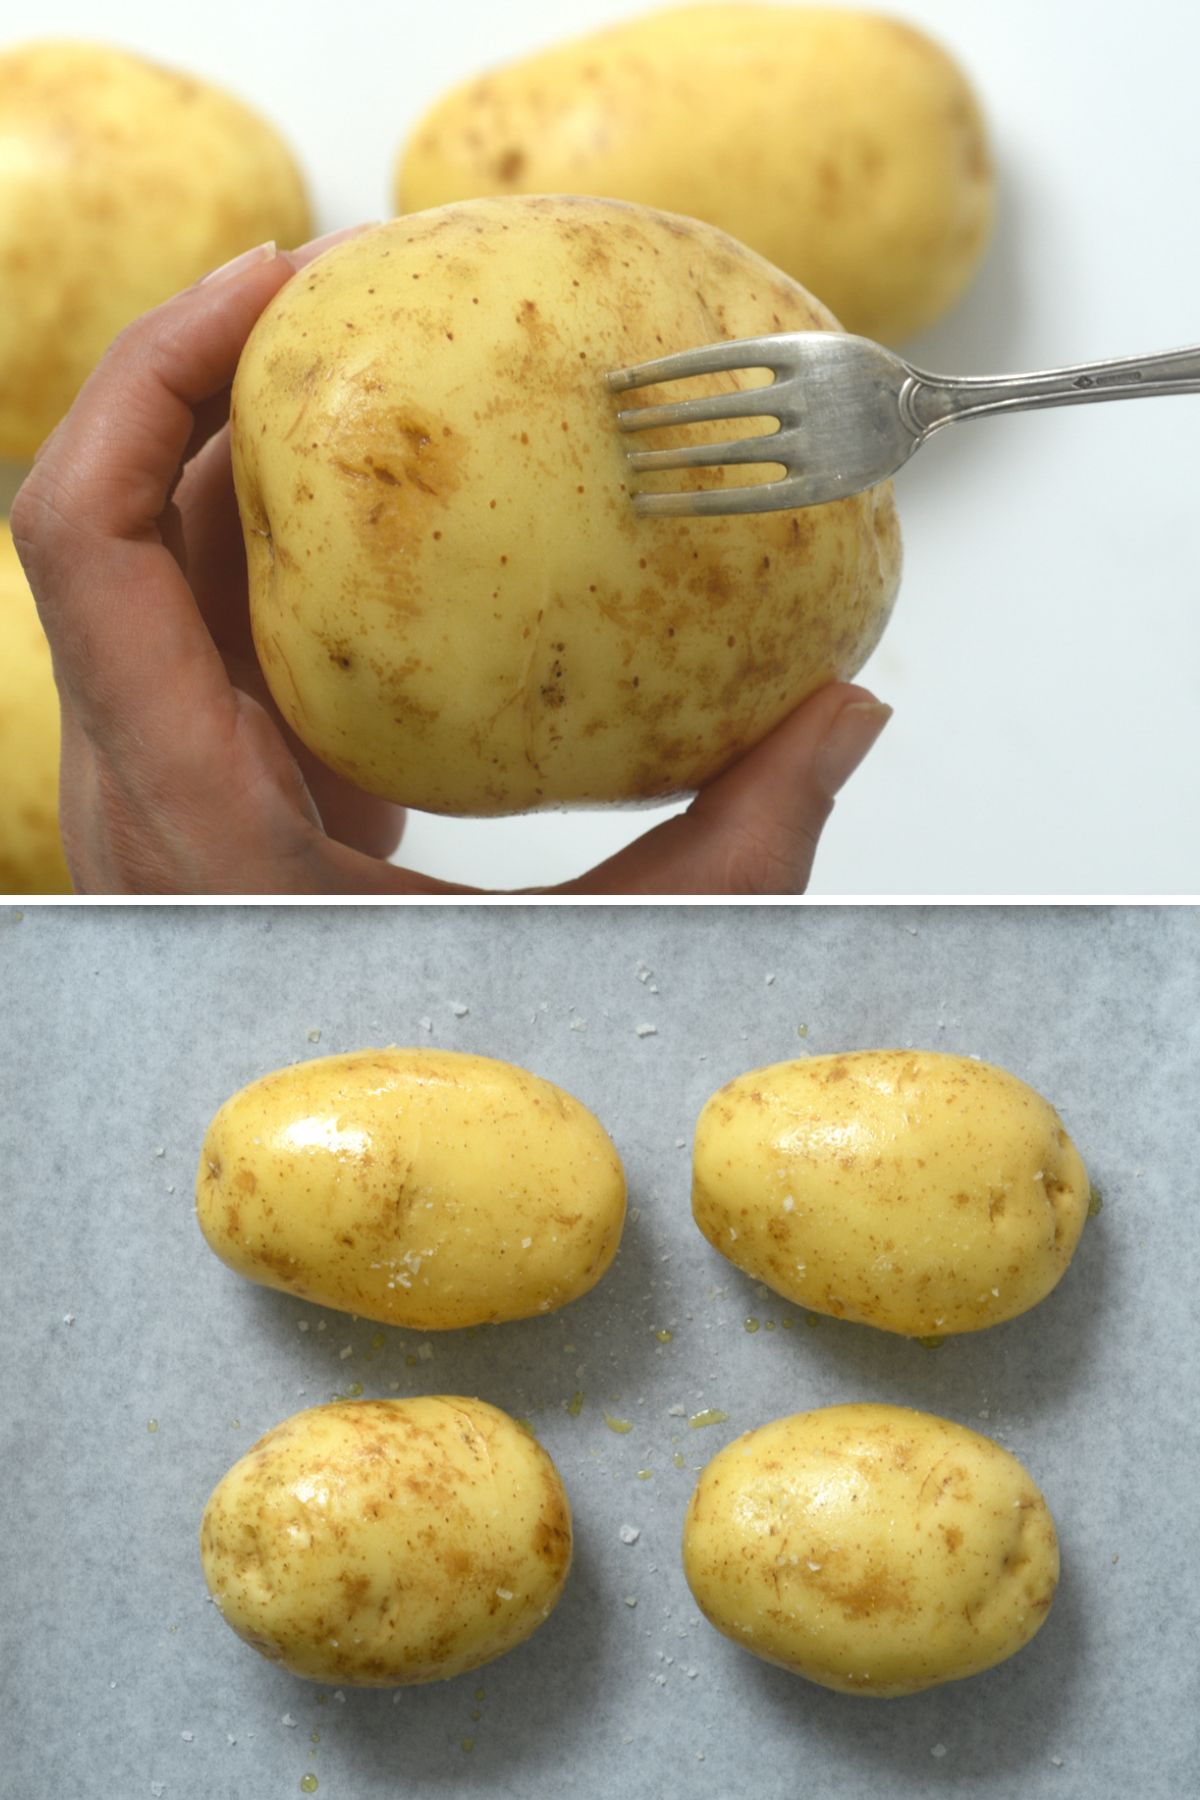 Steps for preparing potatoes for baking